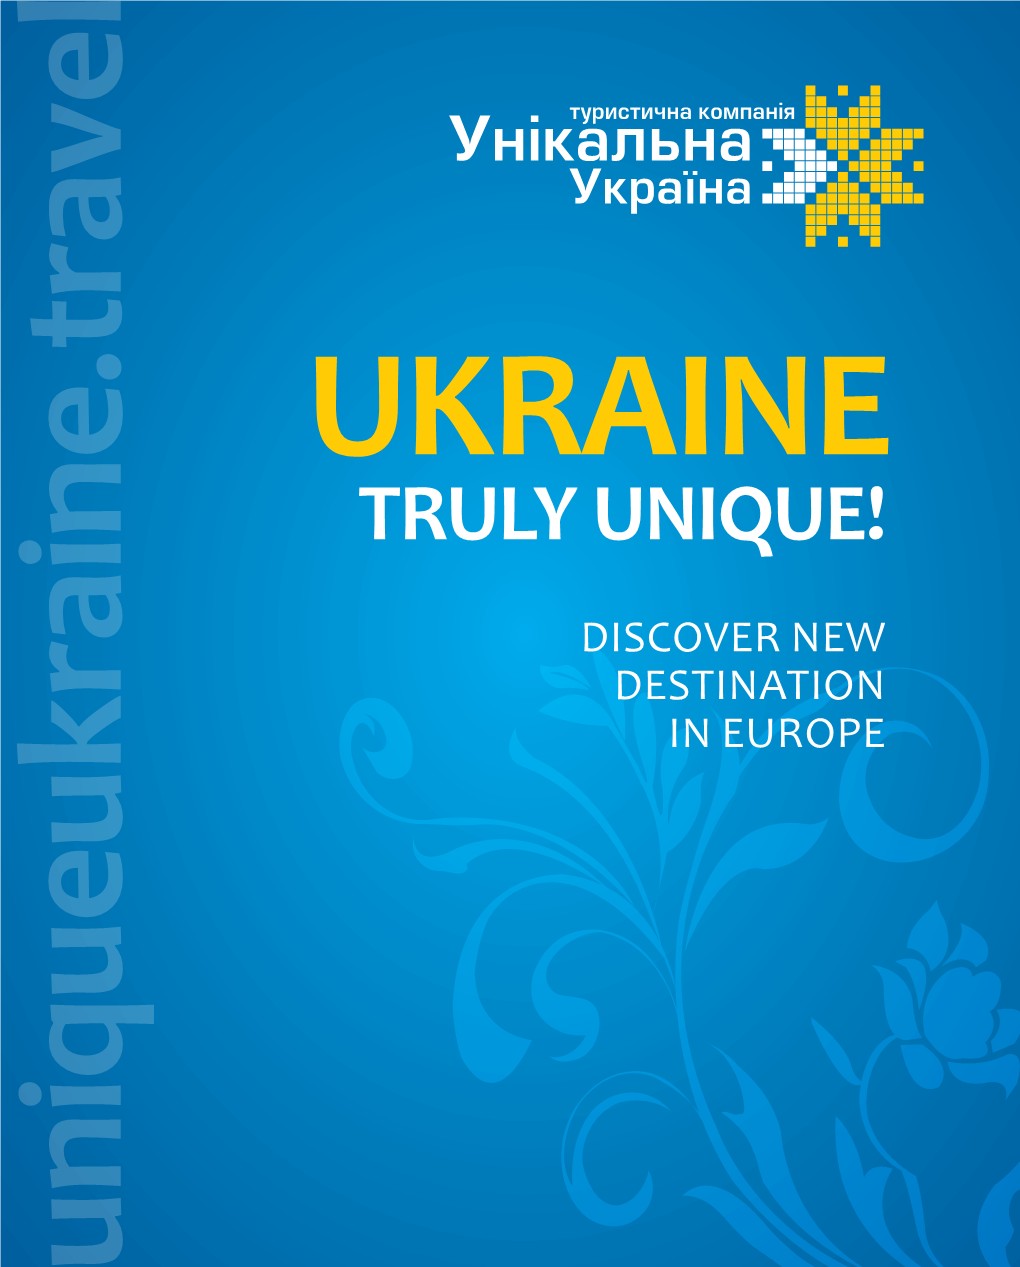 Ukraine Truly Unique!